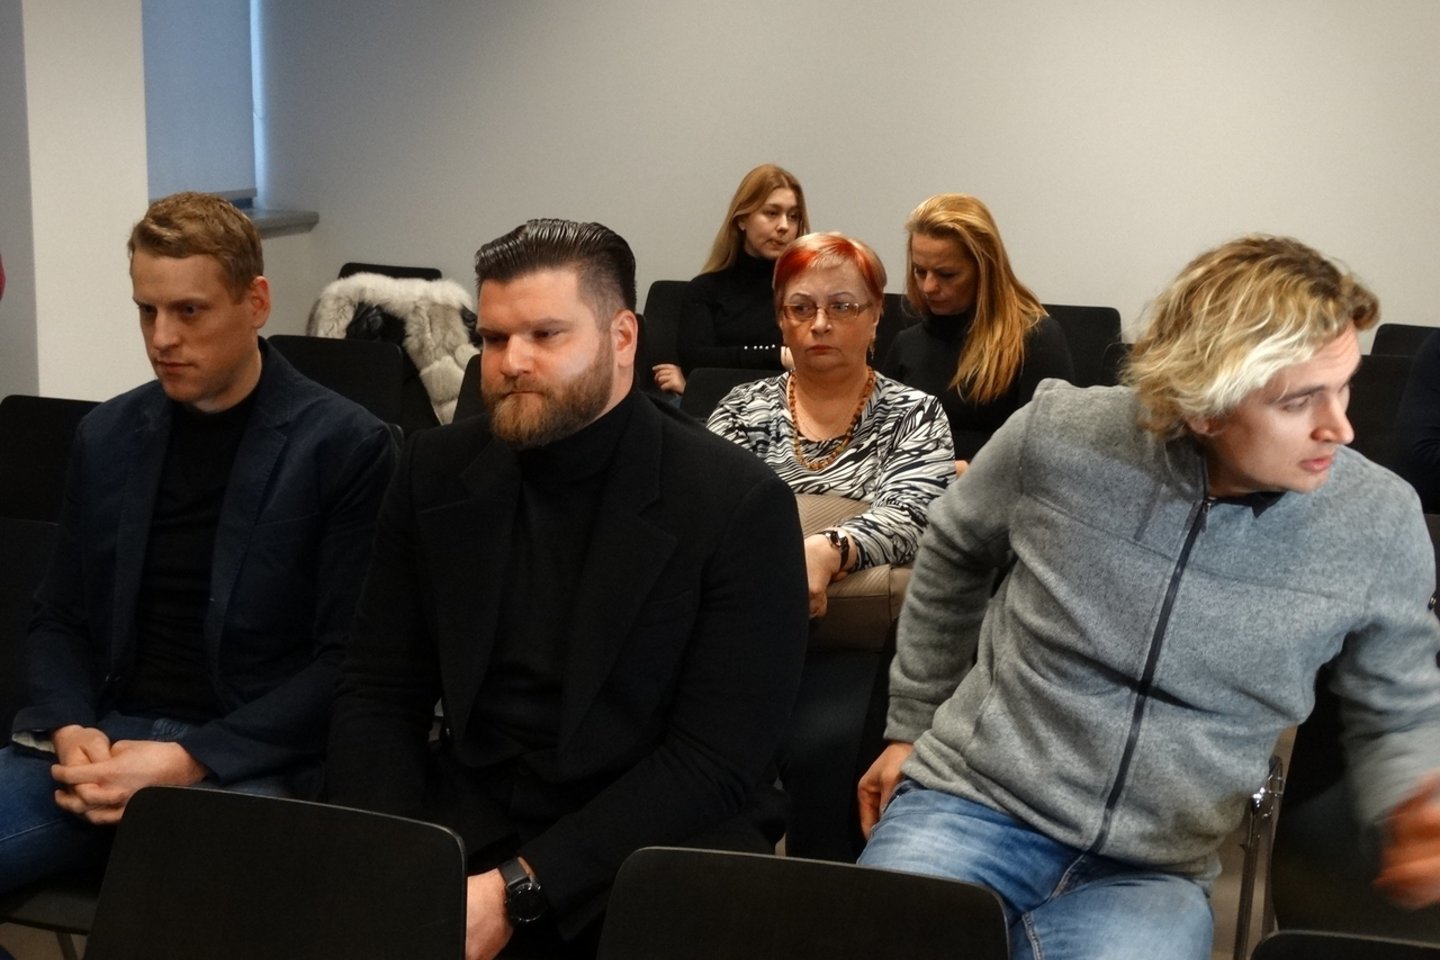  "Grožio chirurgijos" byloje kaltinto gydytojo E.Čiuplevičiaus (nuotr. viduryje) advokatas teigė, jog, jog žiniomis, mediko mirtis nėra smurtinė. <br> M.Patašiaus nuotr.